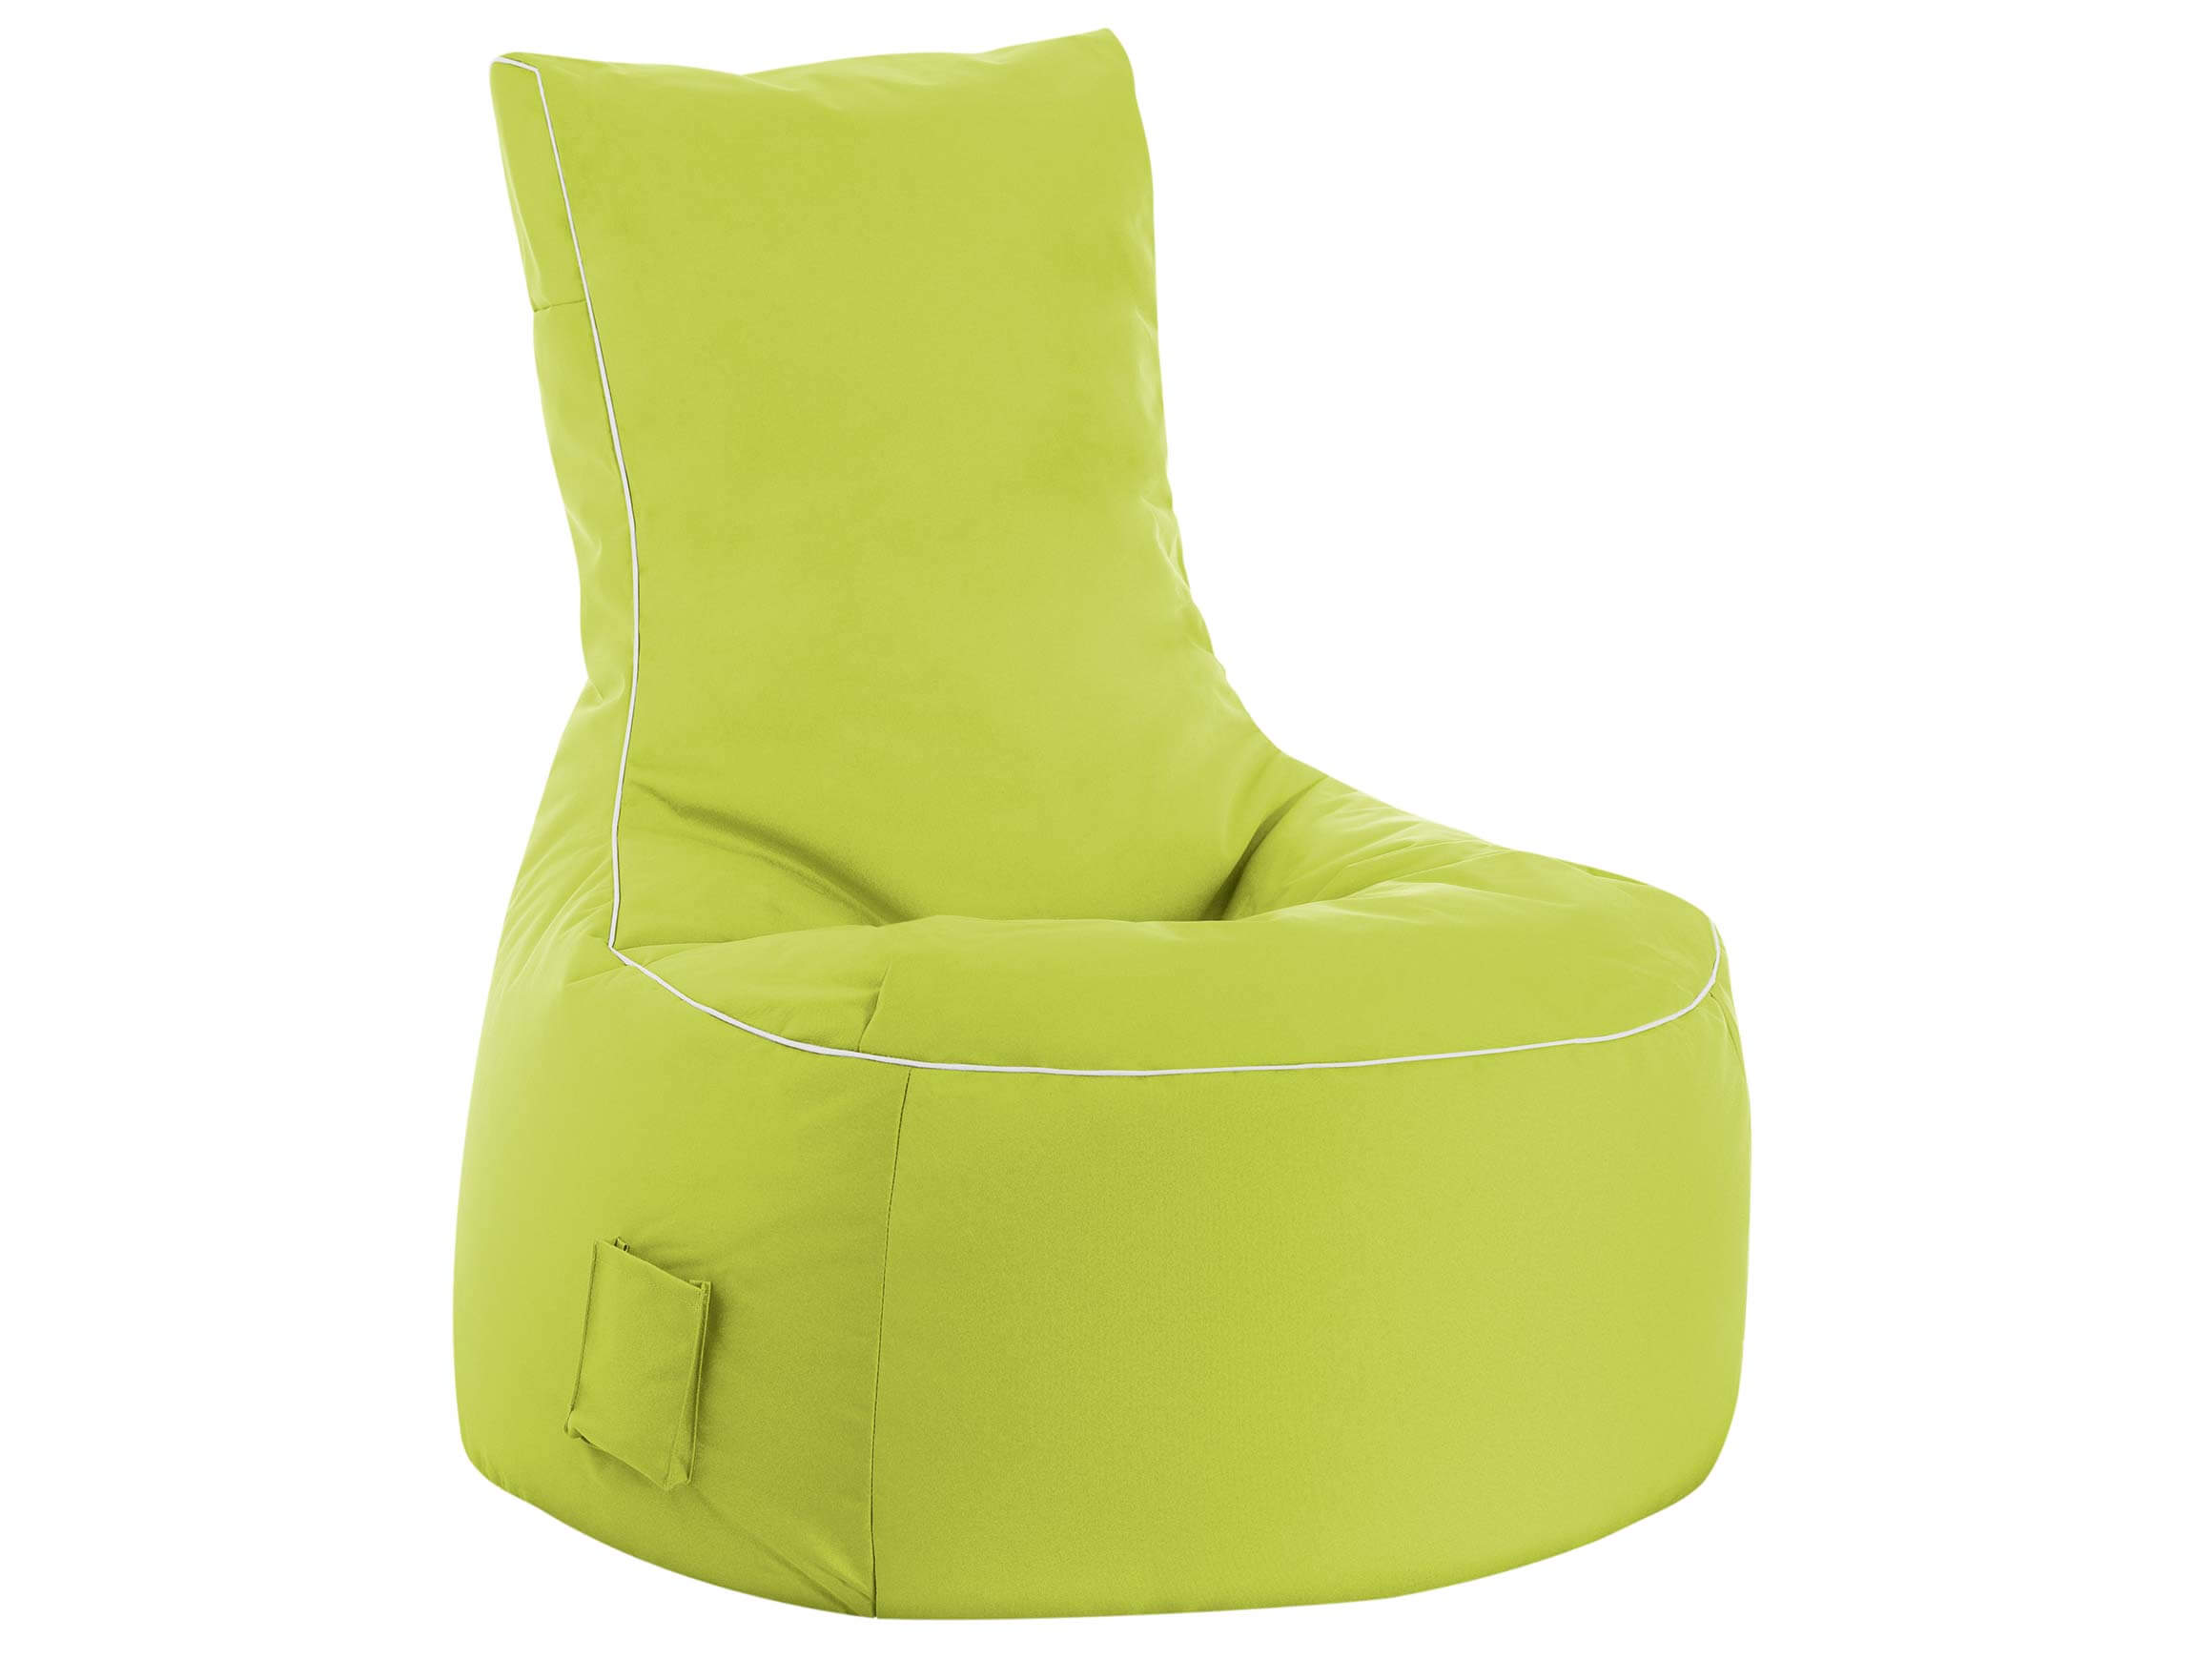 Swing Grün Farbe: Scuba Outdoor-Sitzsack / Magma